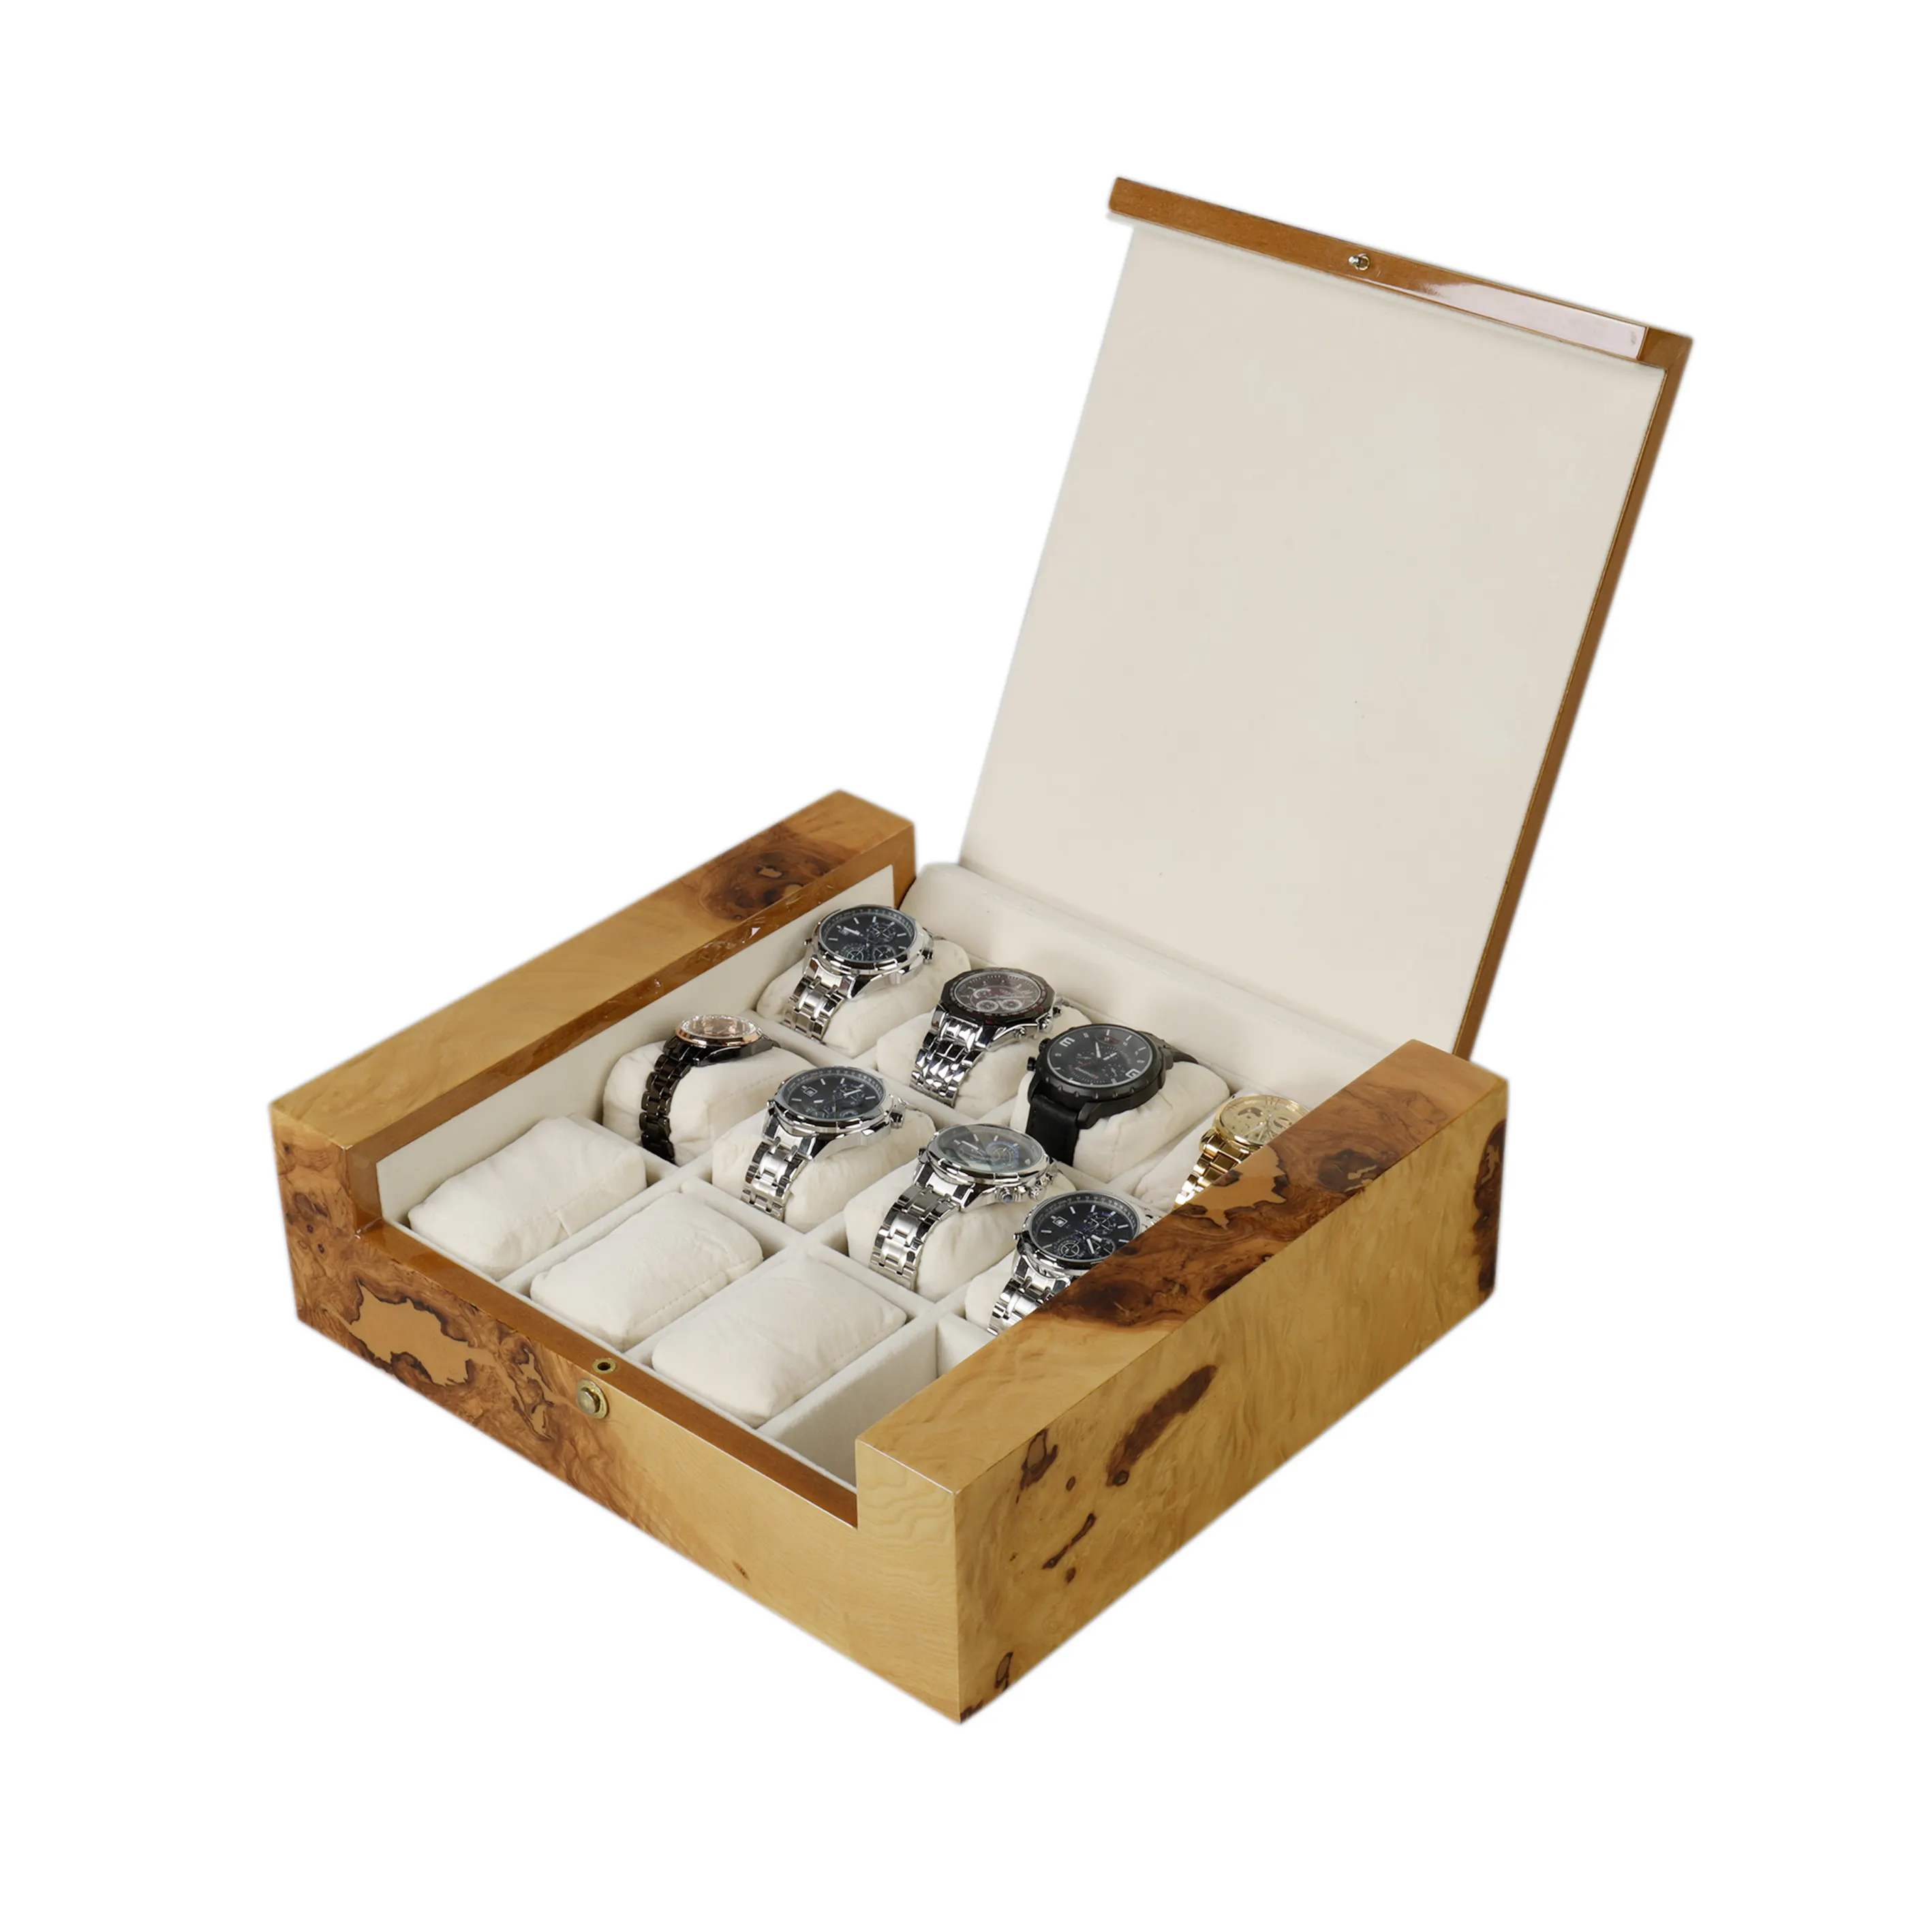 DS 12 Sitze Uhren box Hoch glänzende Lack uhr Geschenk box Luxus Uhren box Organizer mit Kissen